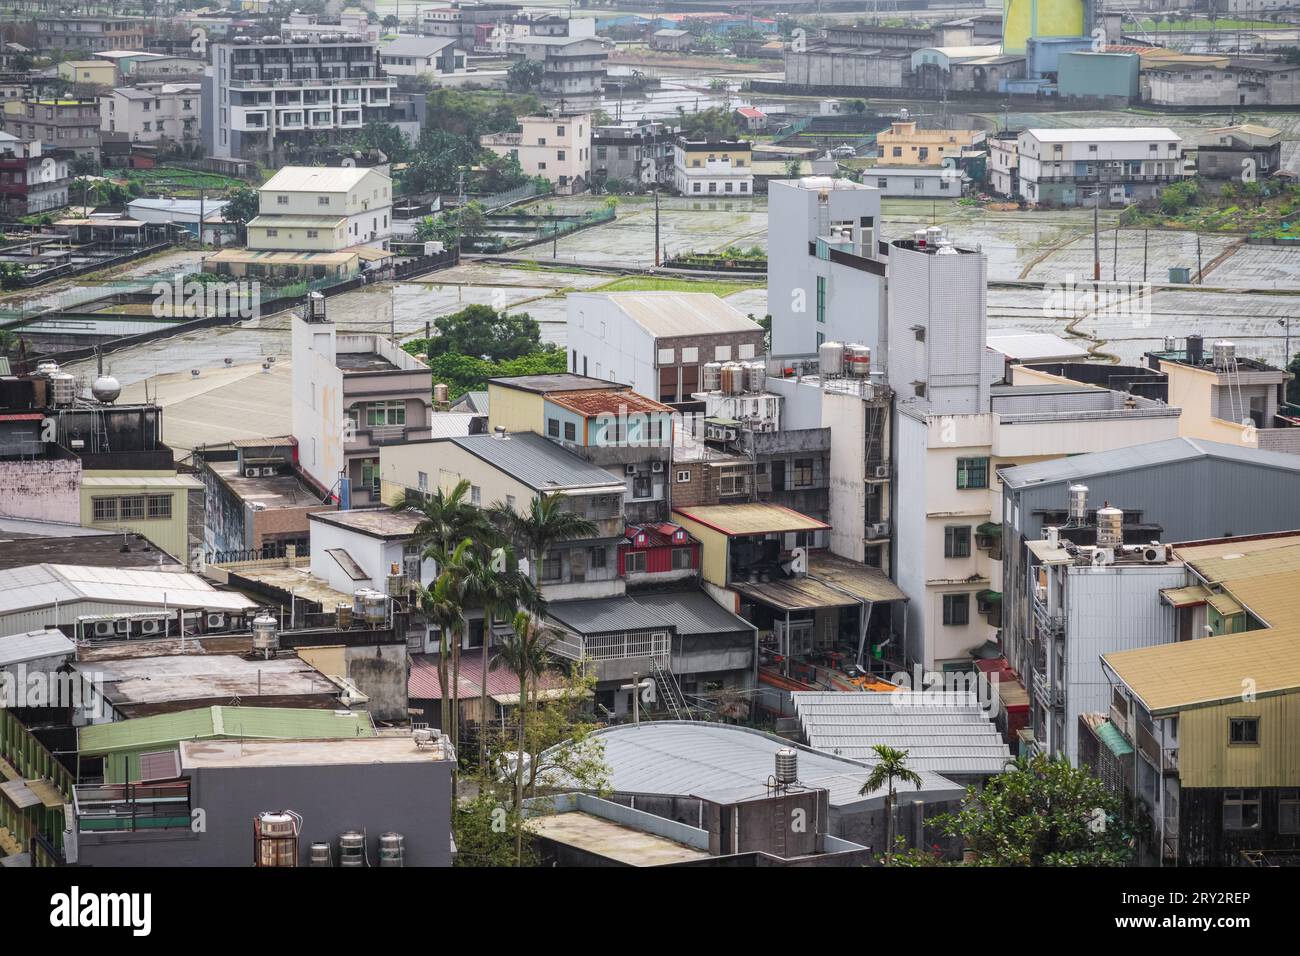 Jiaoxi townscape à Yilan, Taiwan avec de nombreux ajouts illégaux de toit en métal ondulé Banque D'Images